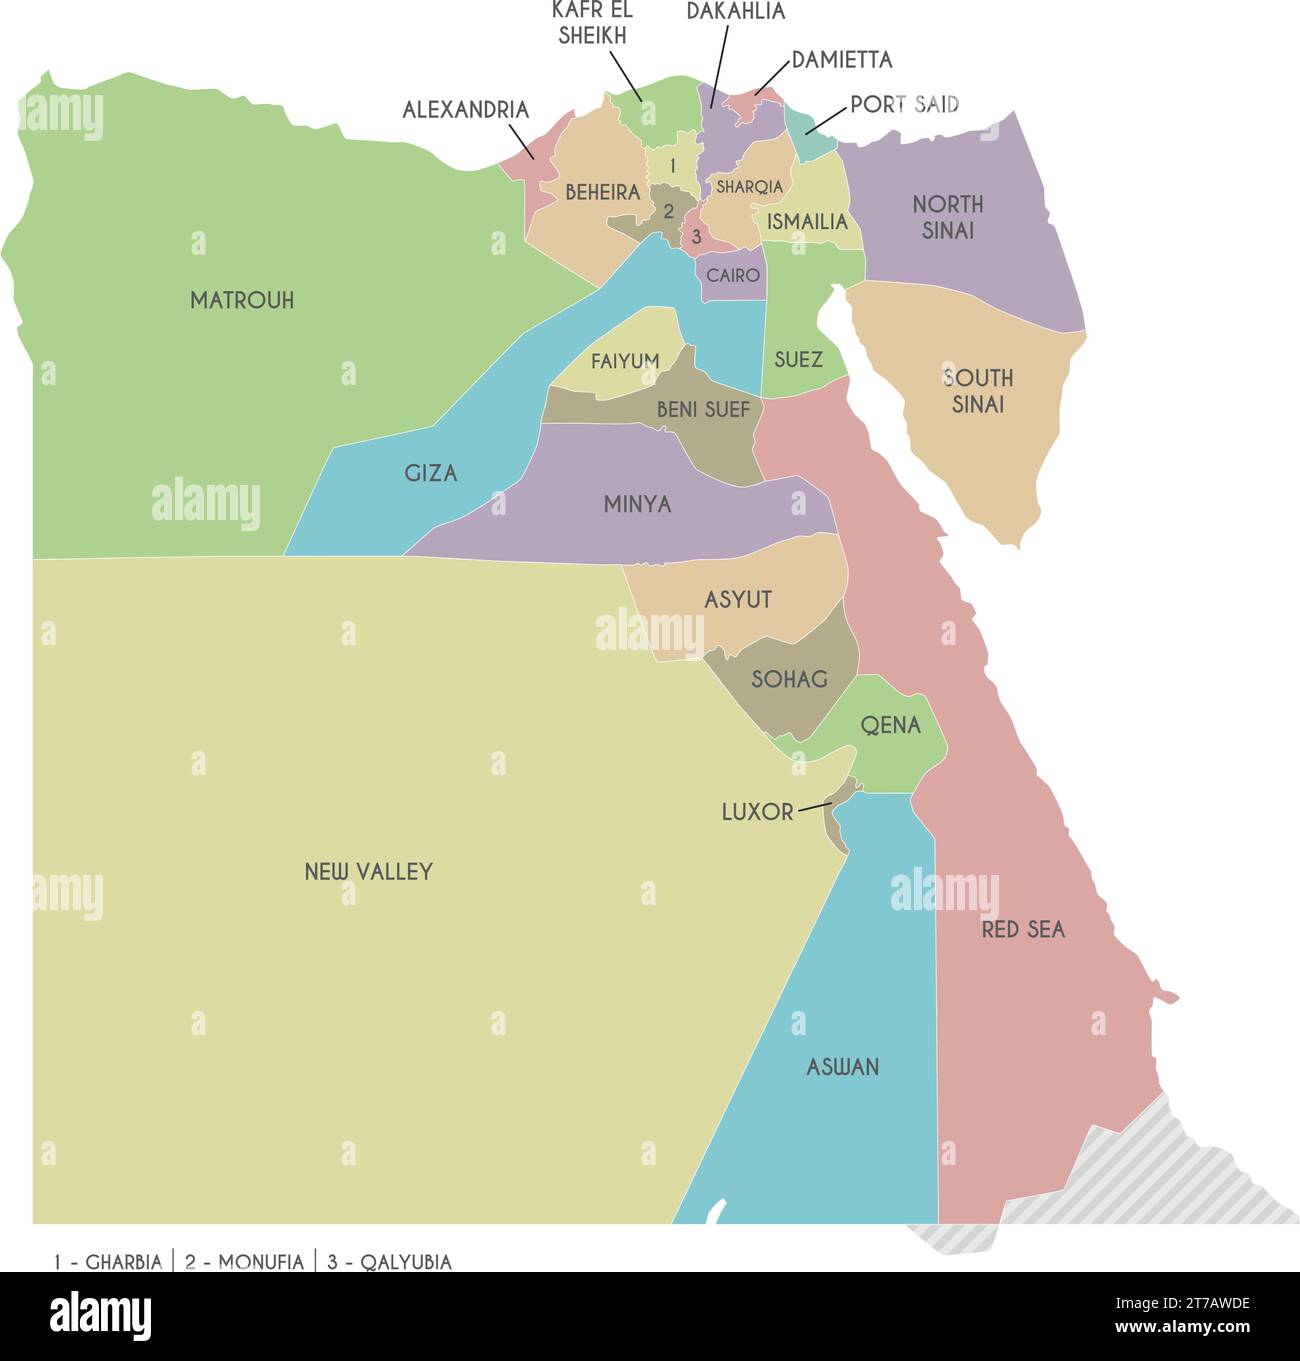 Mappa vettoriale dell'Egitto con governatorati o province e divisioni amministrative. Livelli modificabili e chiaramente etichettati. Illustrazione Vettoriale